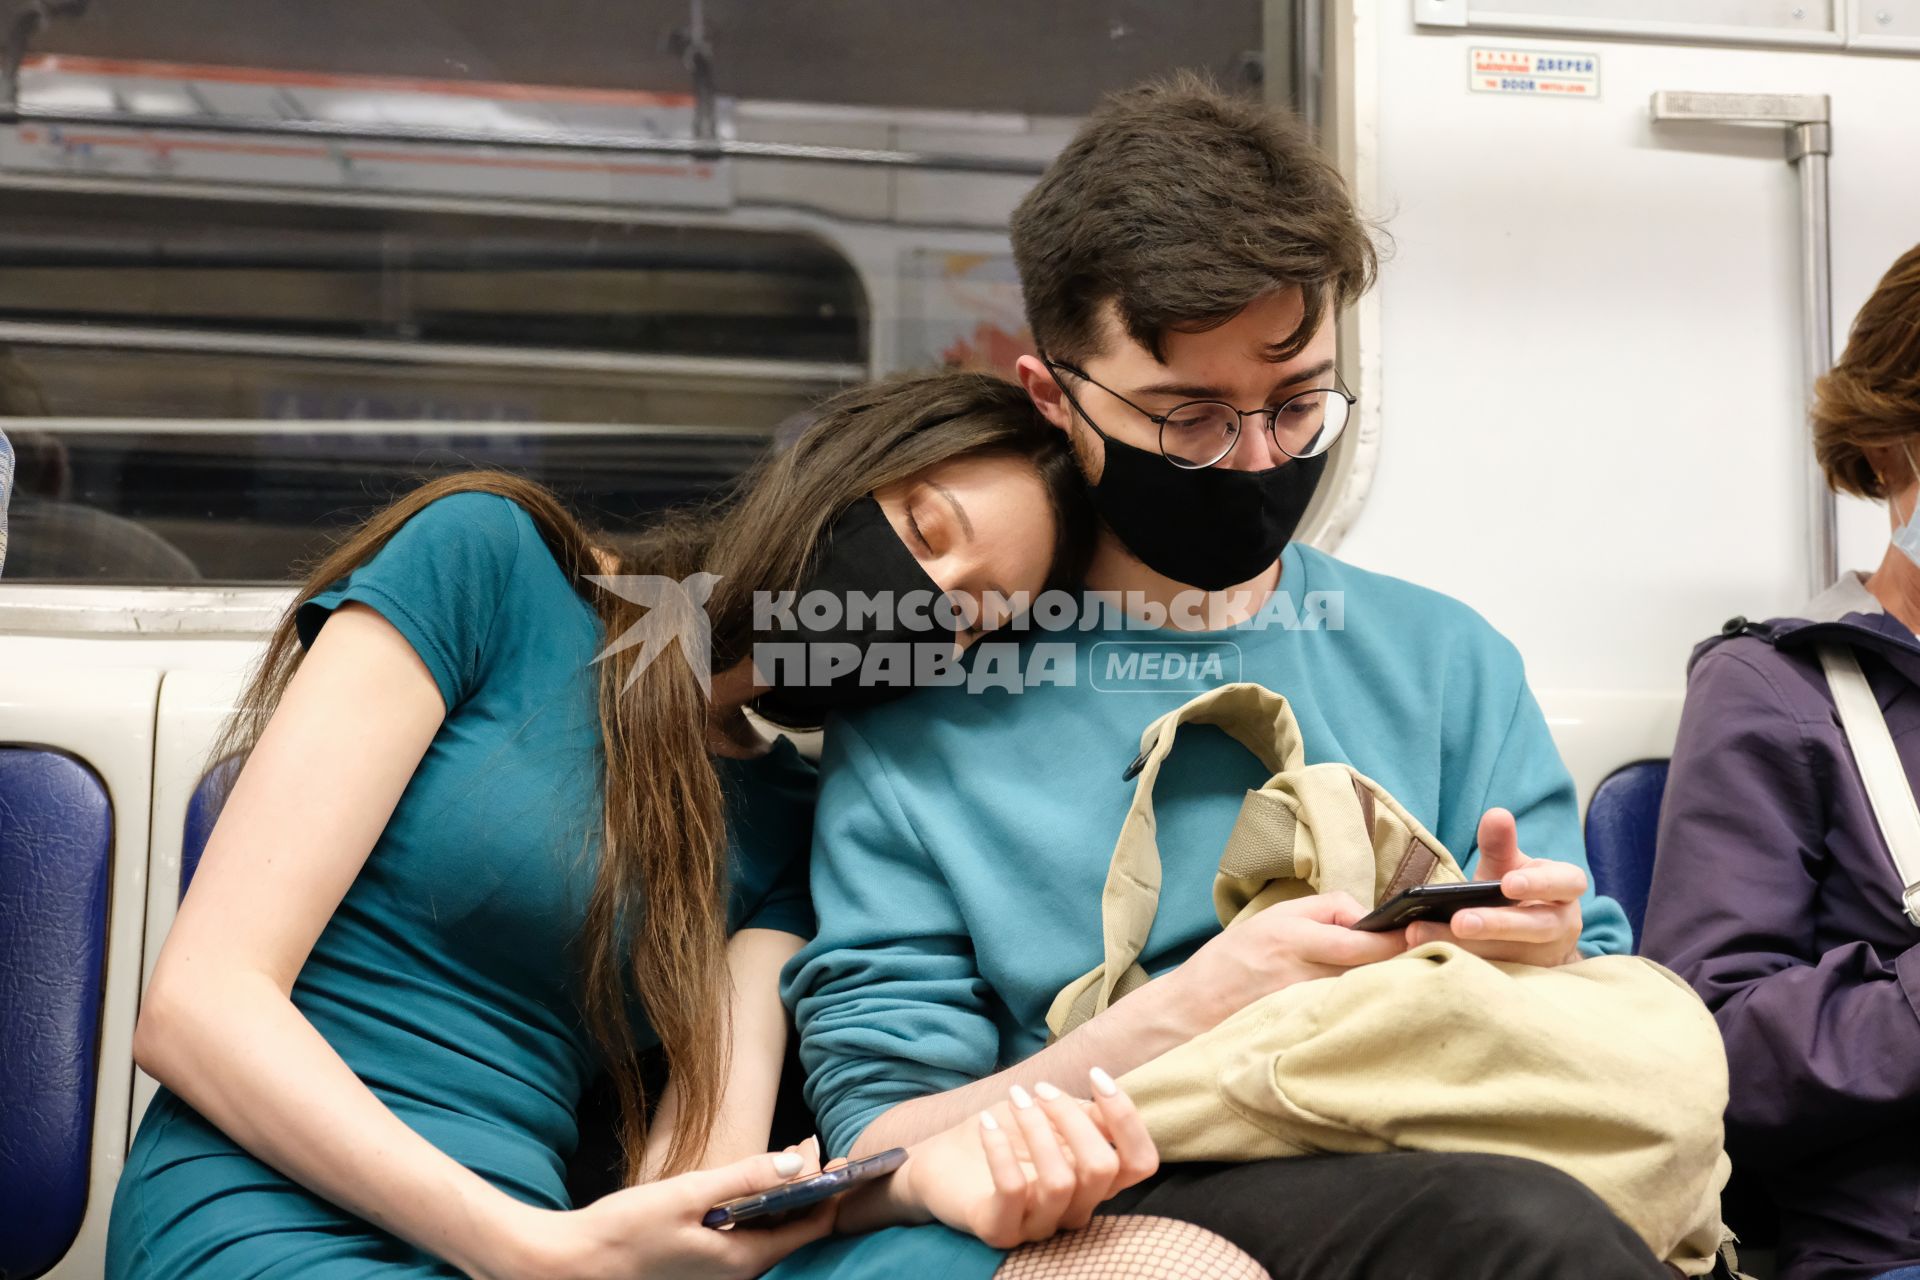 Санкт-Петербург. Пассажиры в защитных масках в вагоне метро.